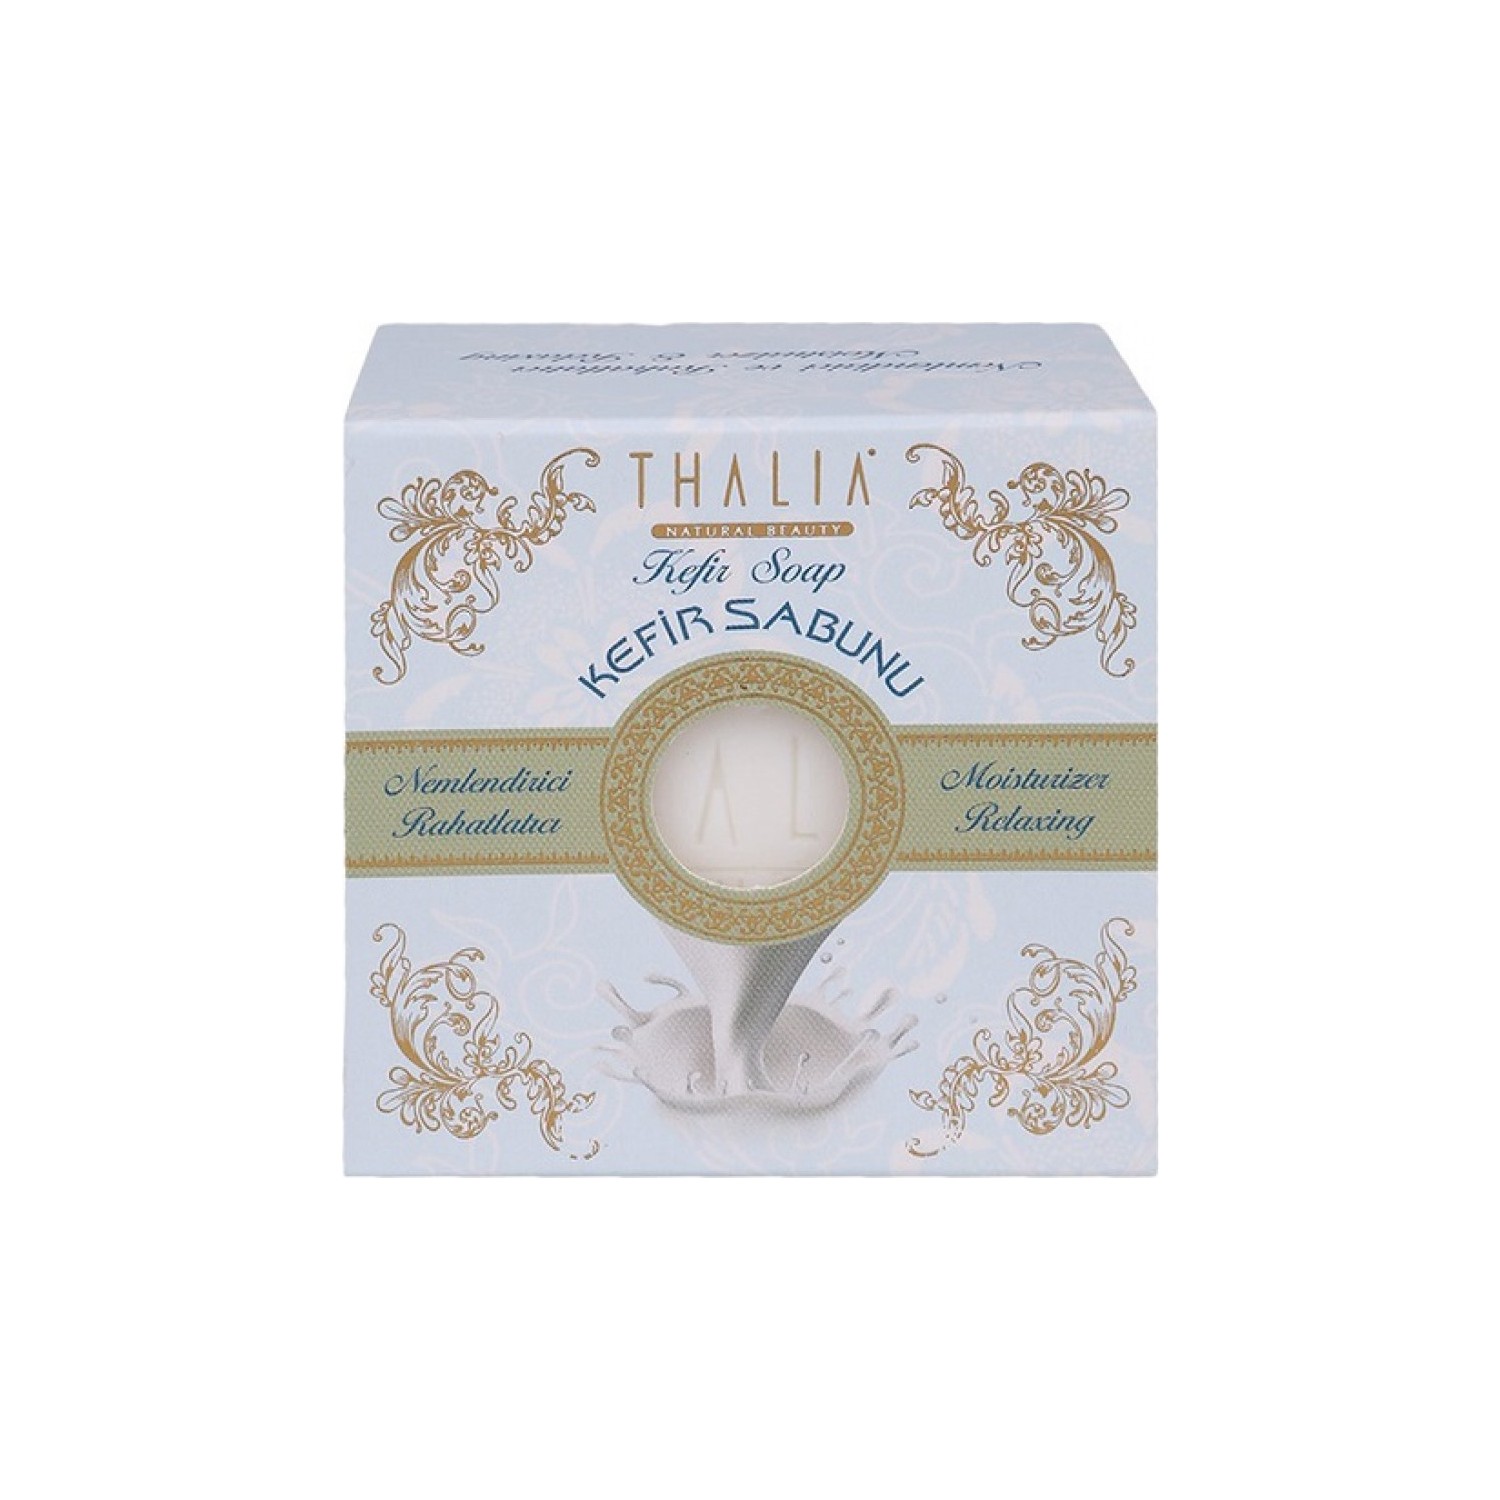 Натуральное мыло Thalia с экстрактом кефира натуральное мыло thalia organic argan oil 3 x 150 г